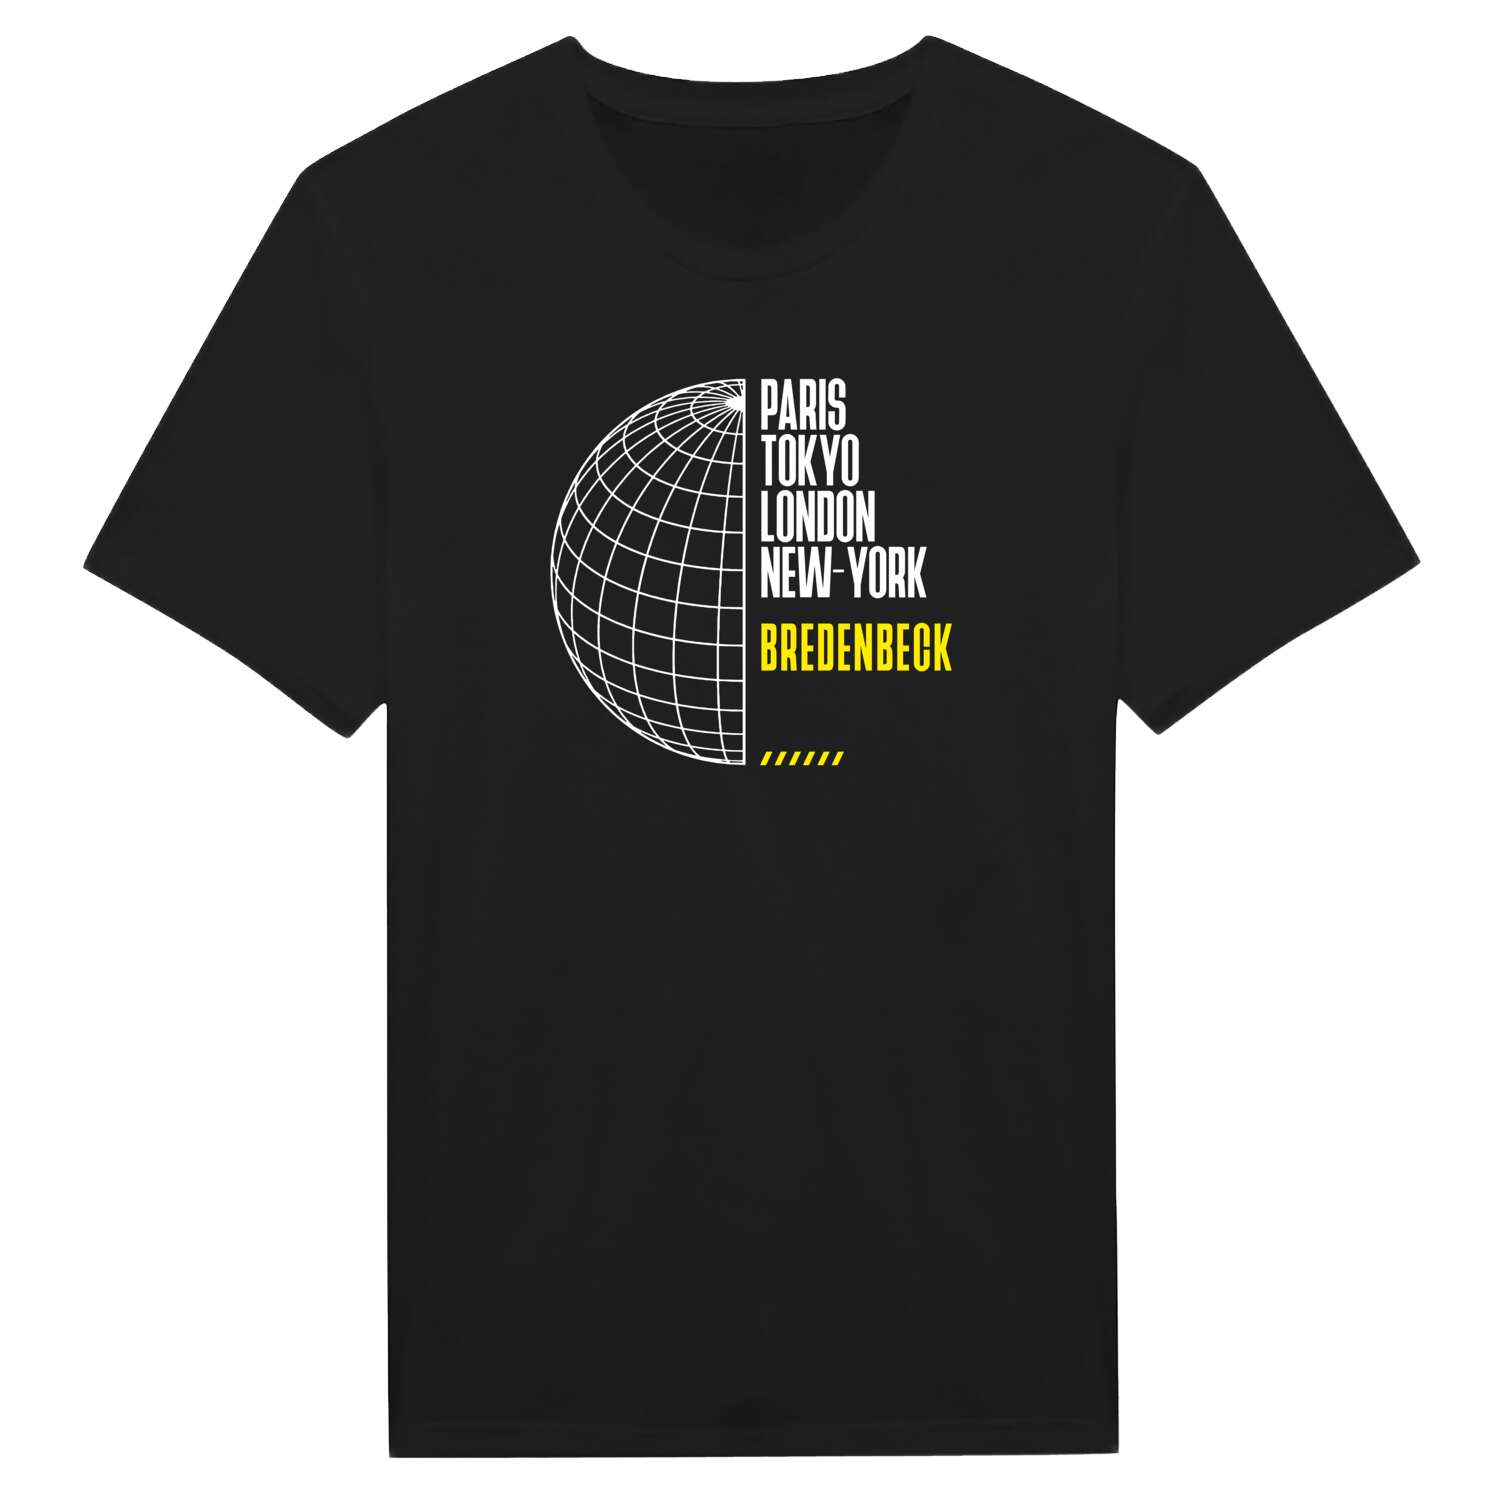 Bredenbeck T-Shirt »Paris Tokyo London«